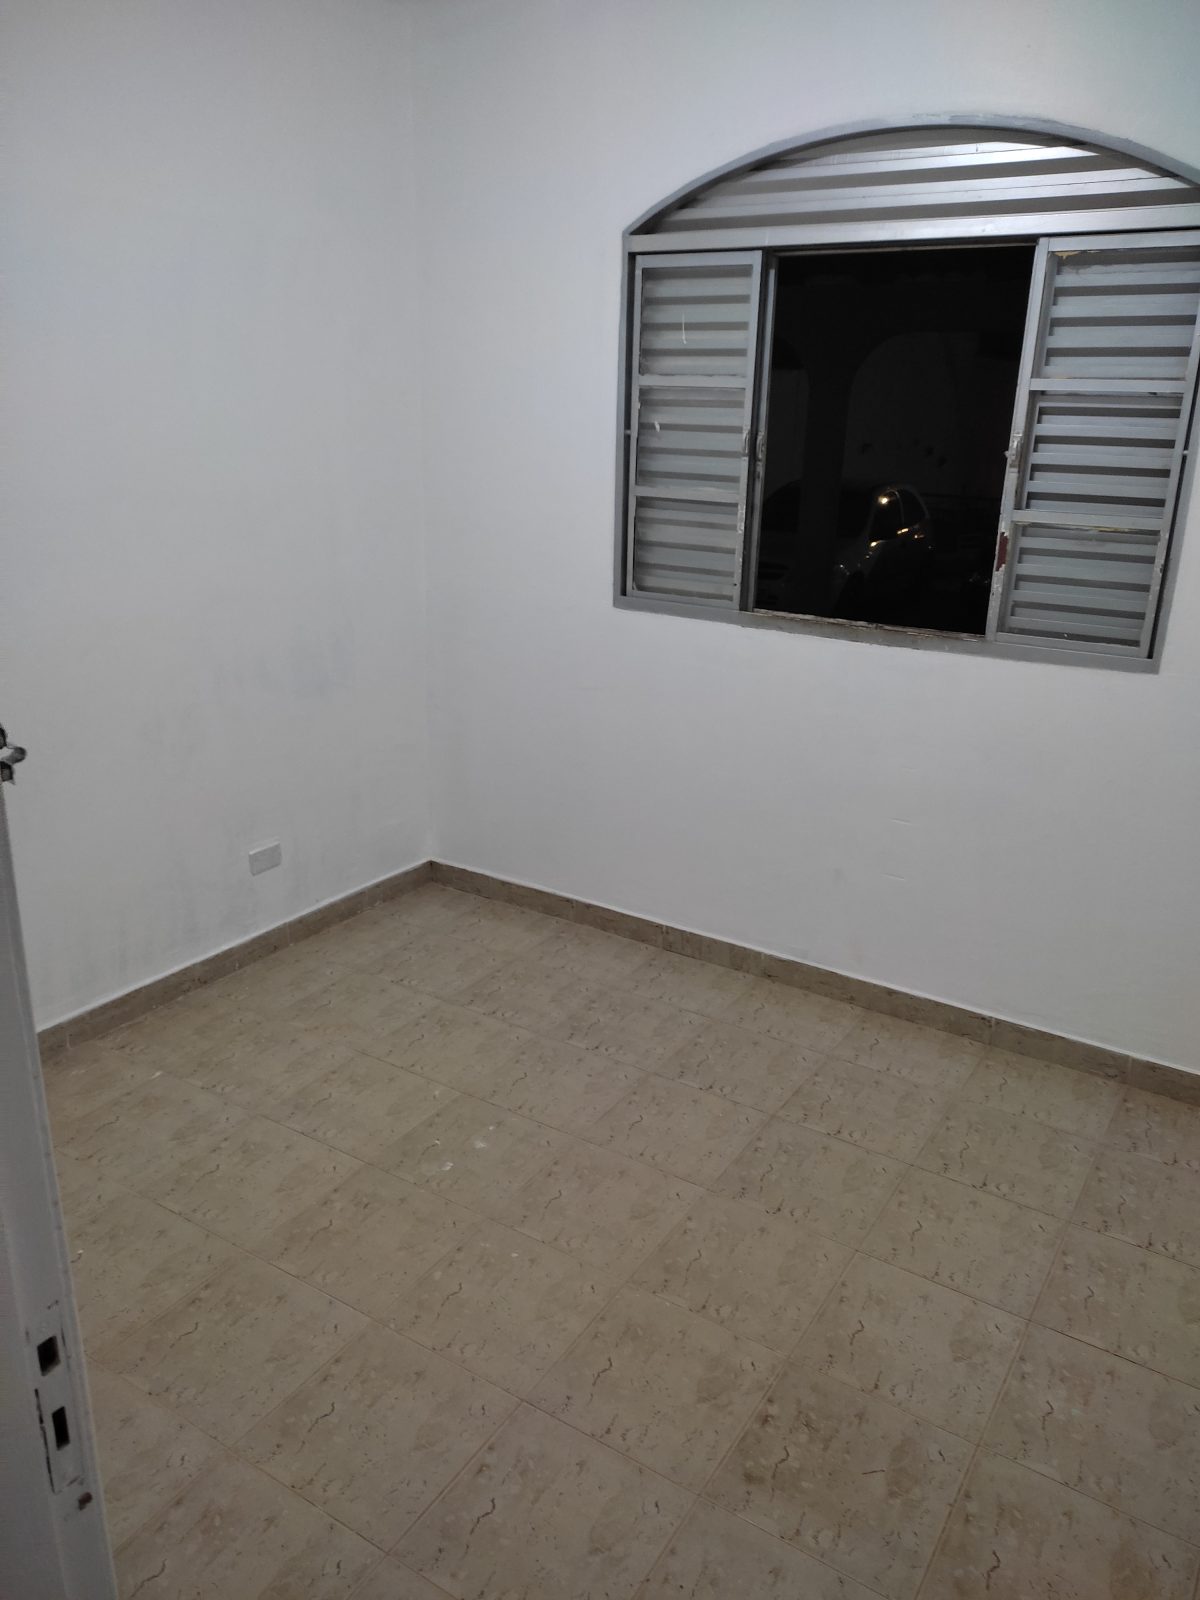 Captação de Apartamento a venda na Es 11 b, Sobradinho, DF, 73083280, Não informado, Brasília, DF